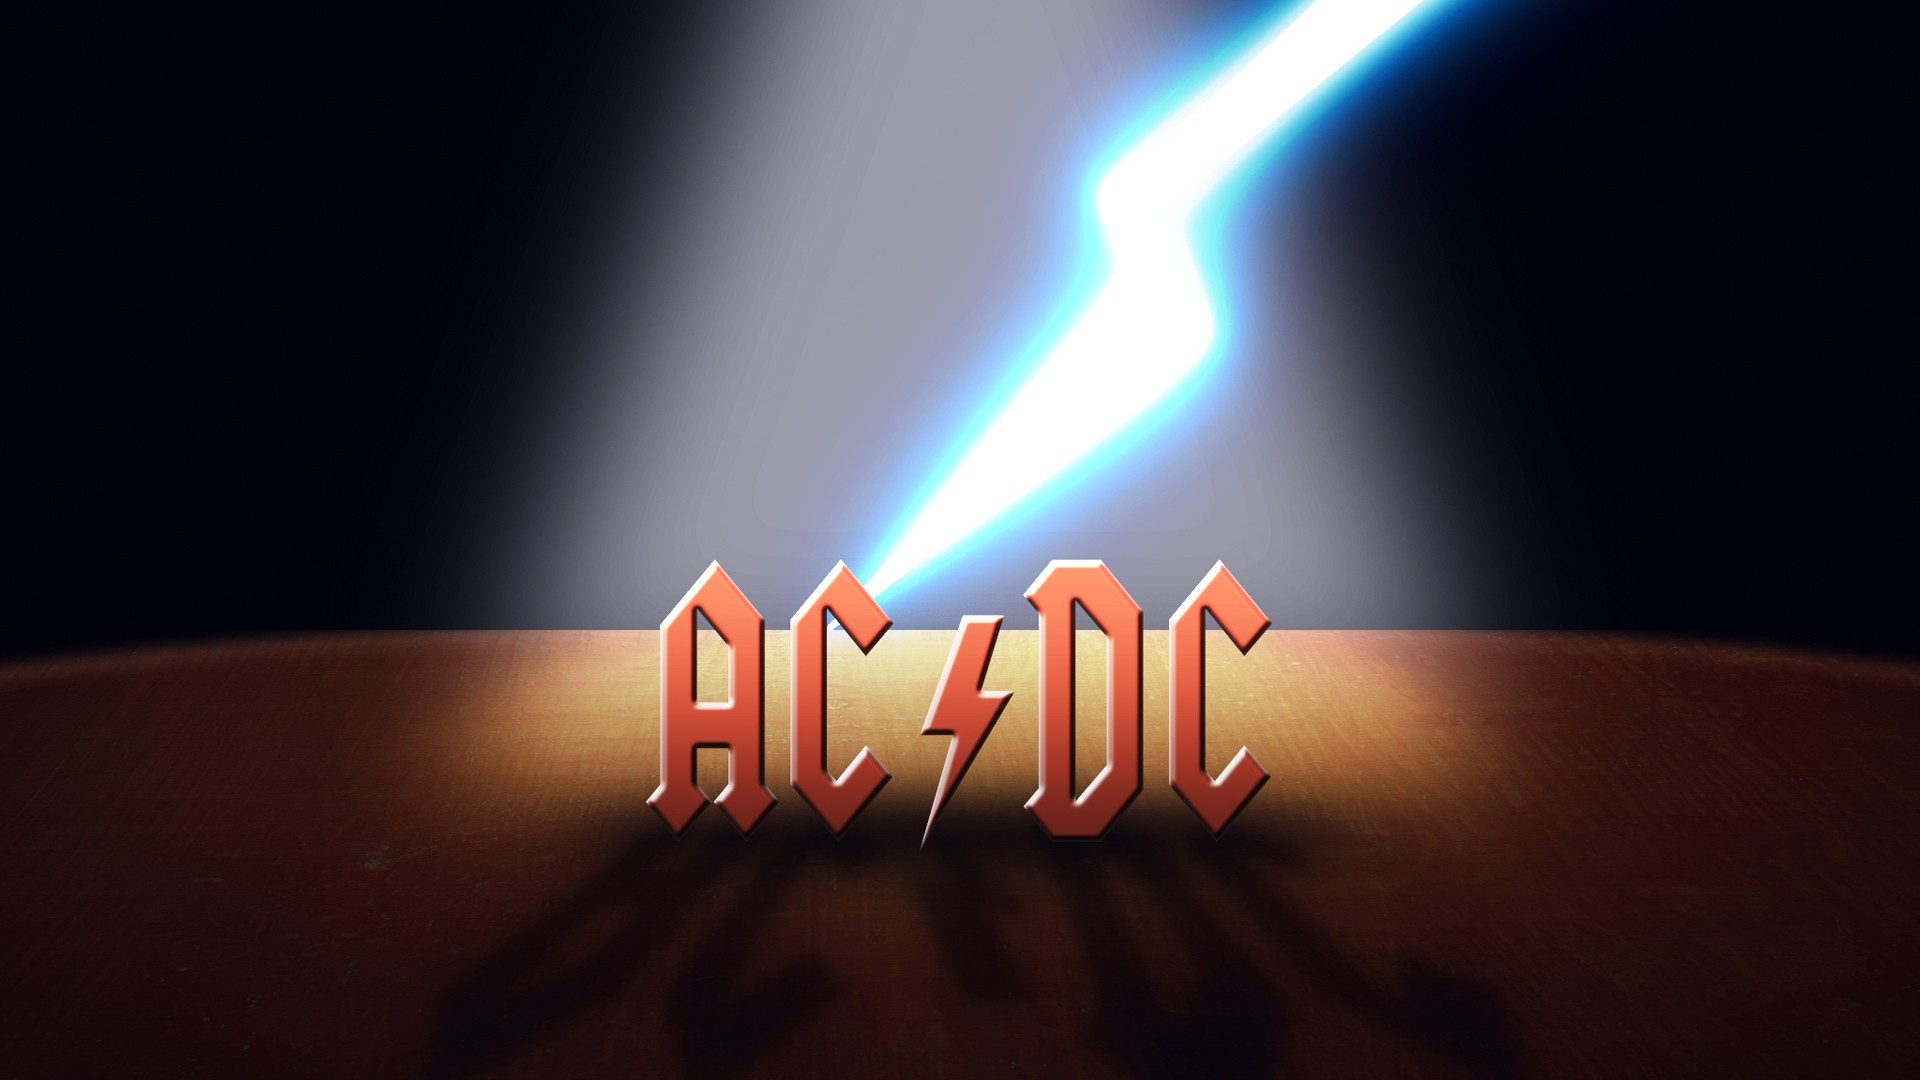 General 1920x1080 AC/DC music logo lightning band logo